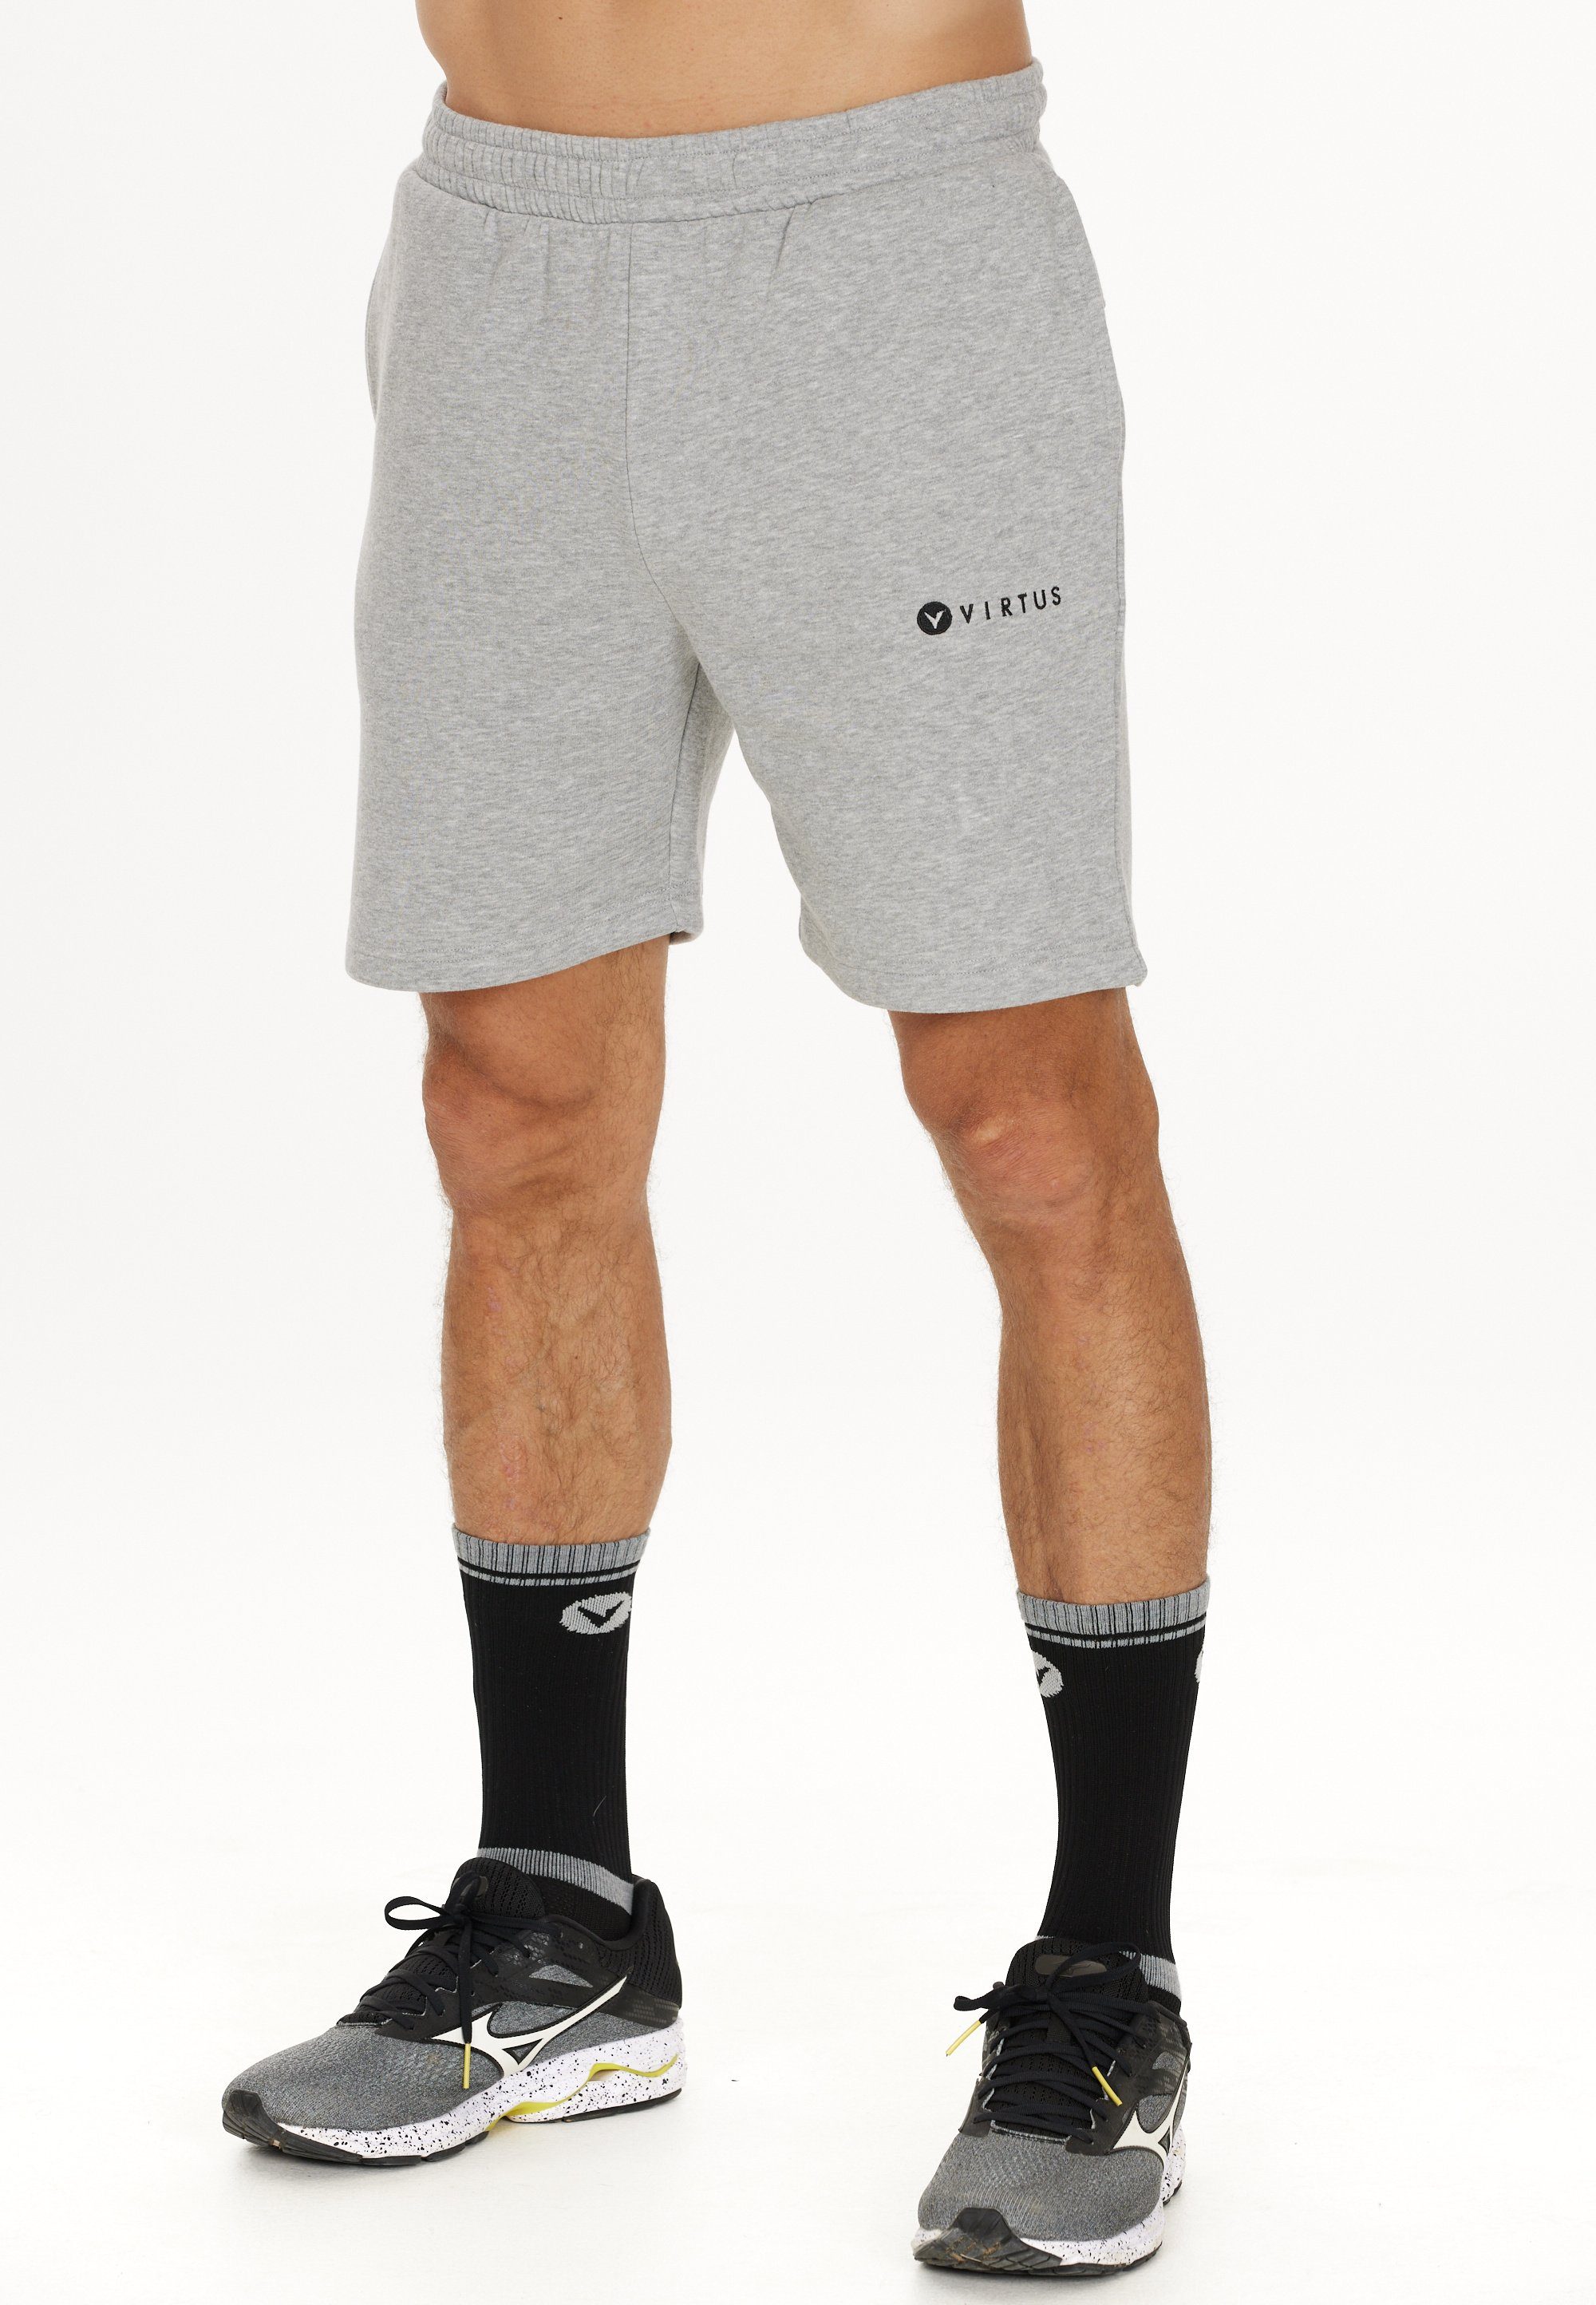 in Shorts Design Virtus Kritow sportlichem grau-meliert